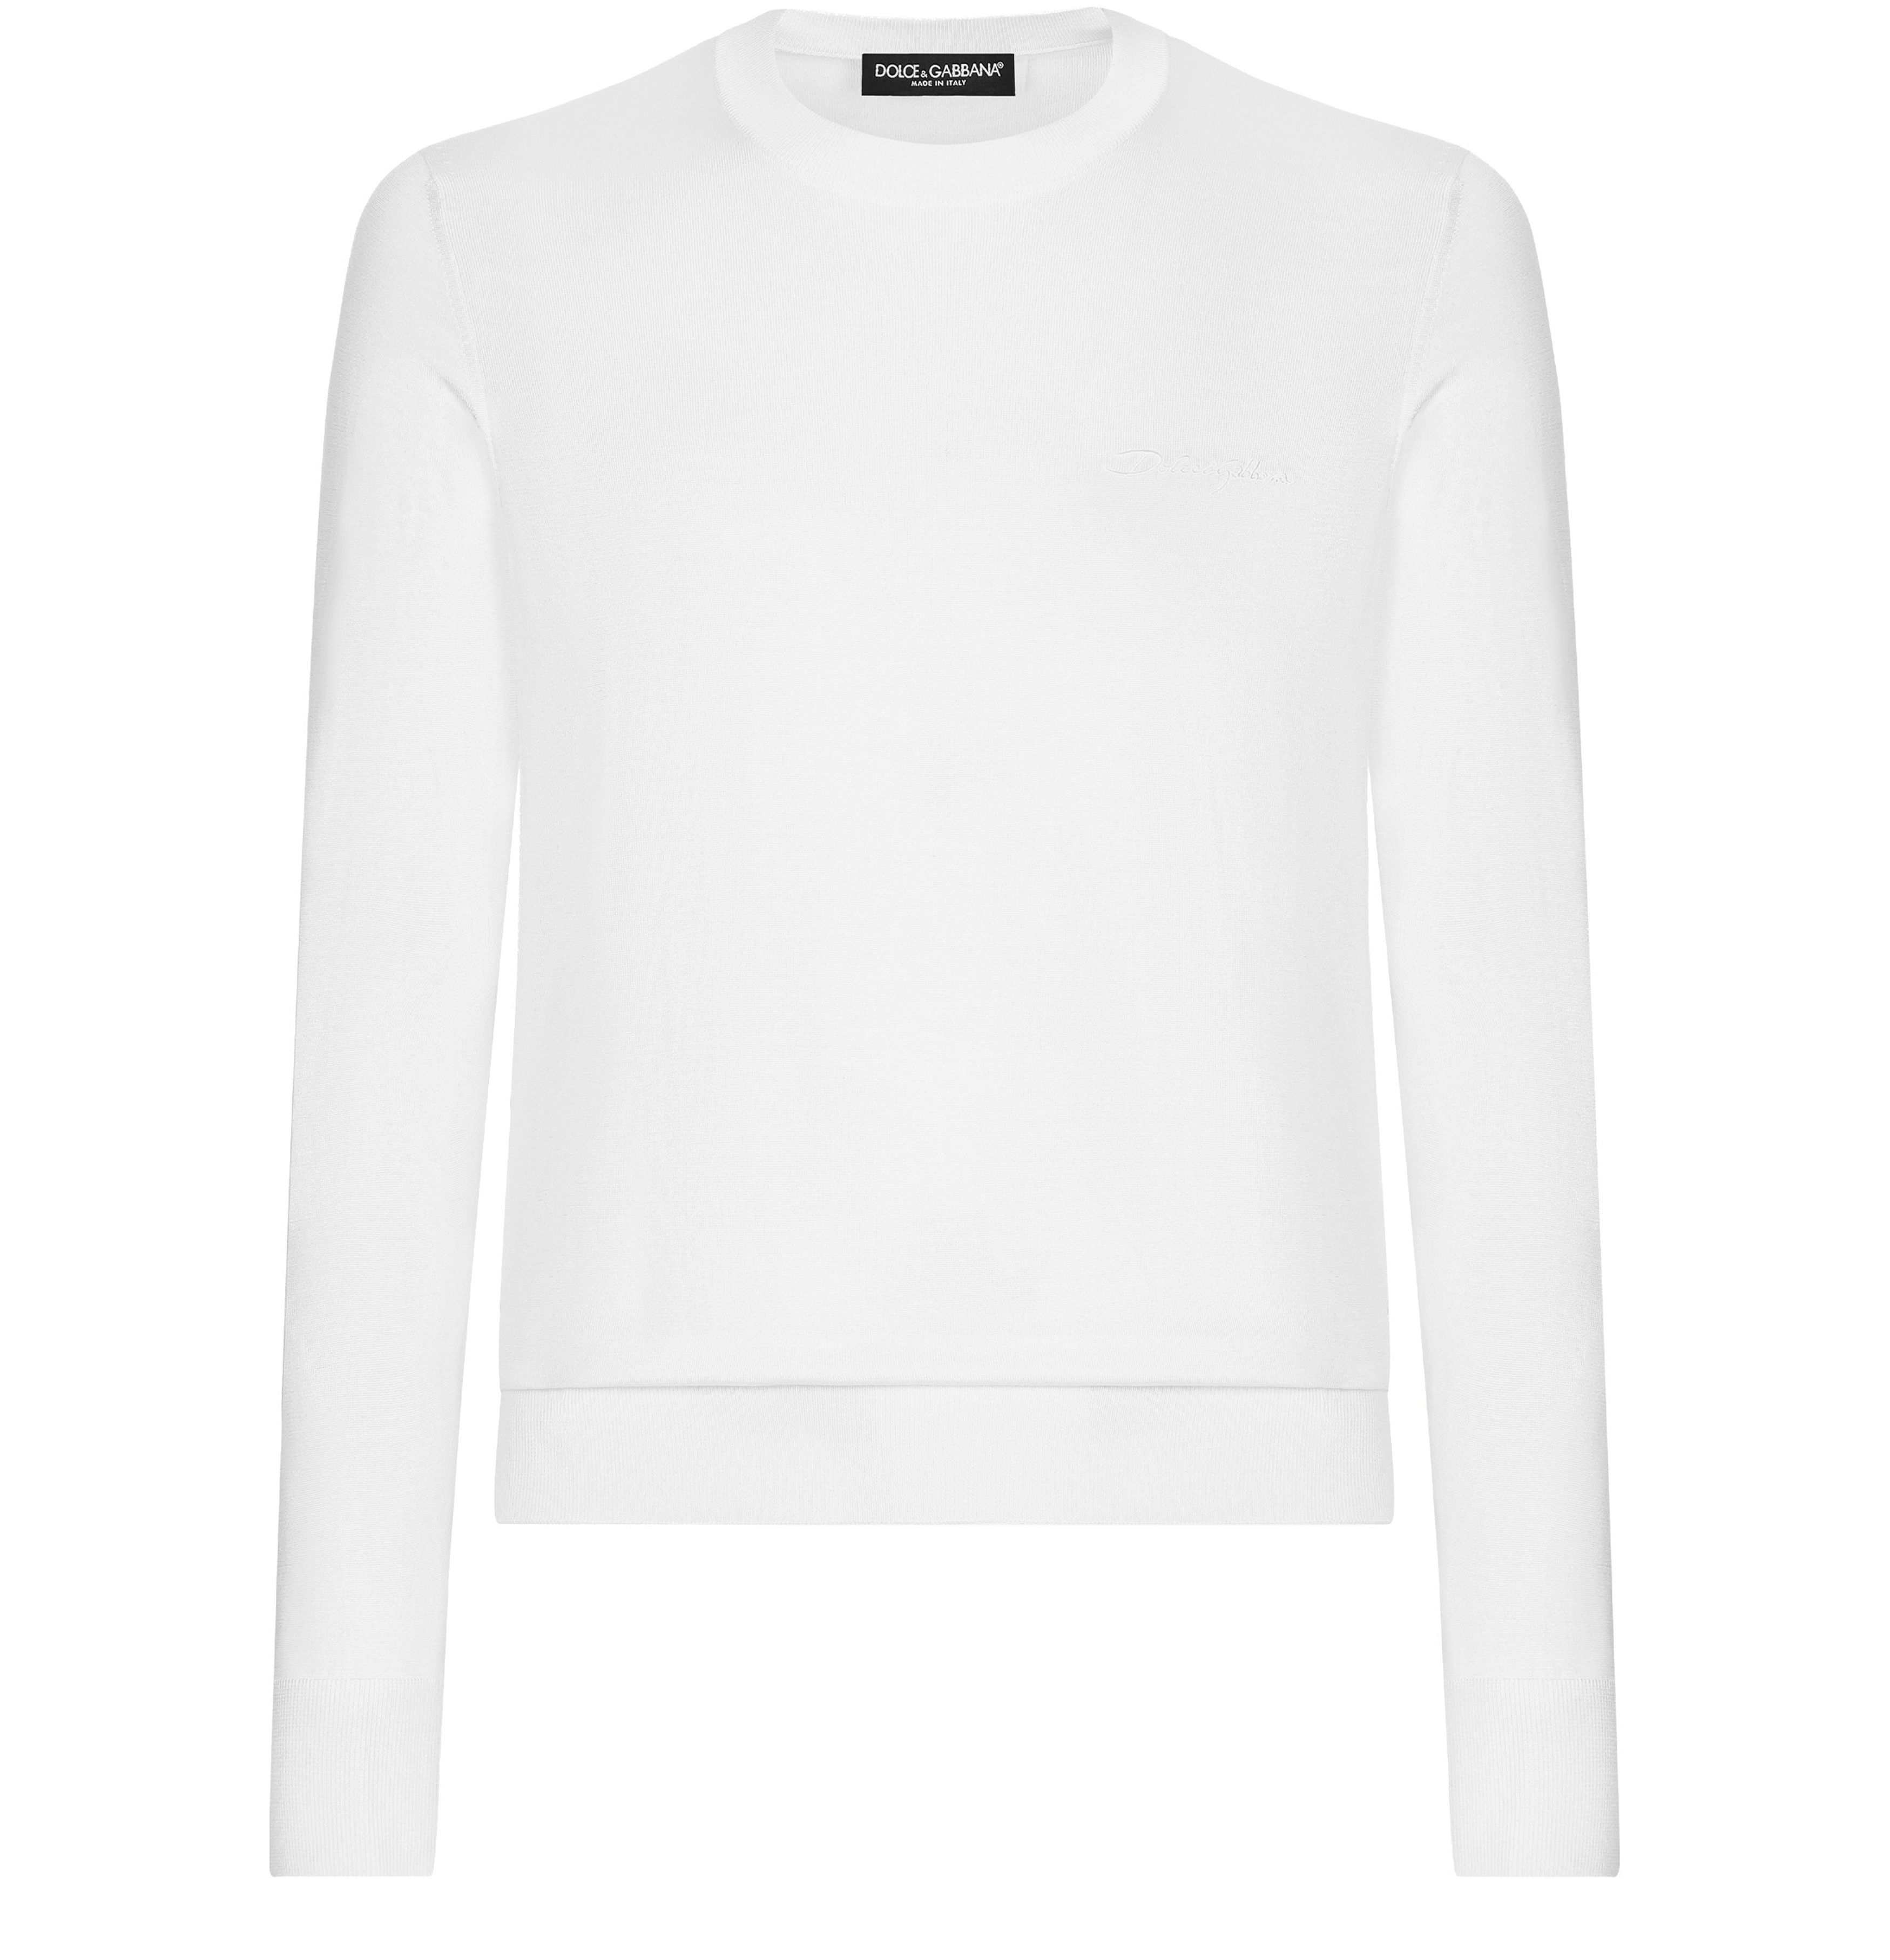 Dolce & Gabbana Round-neck silk sweater with logo